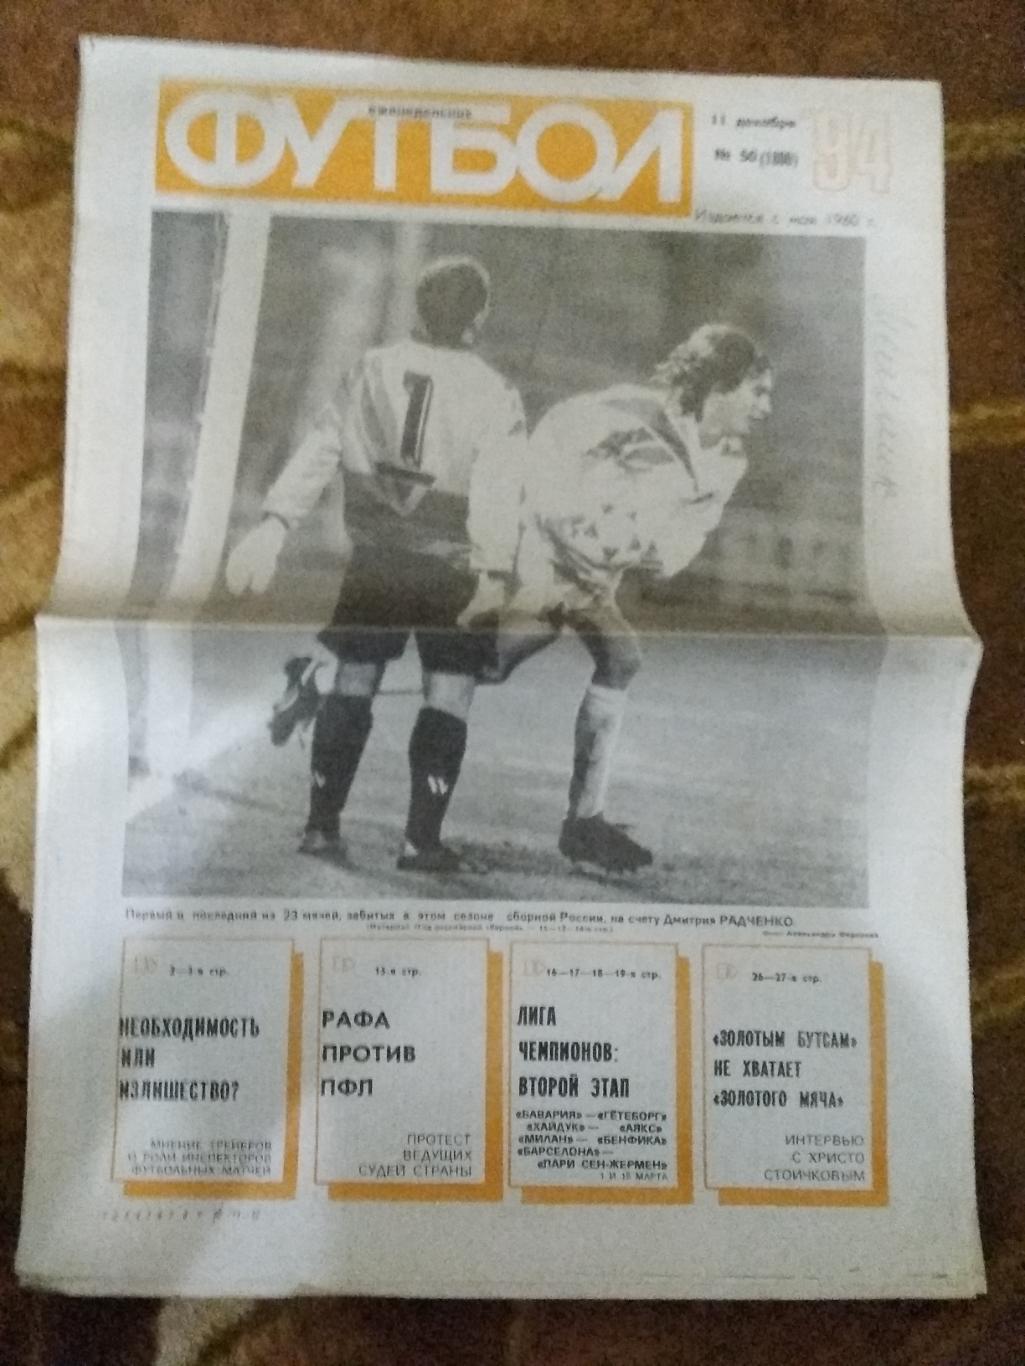 Футбол № 50 1994 г. (ЕК.Спартак).